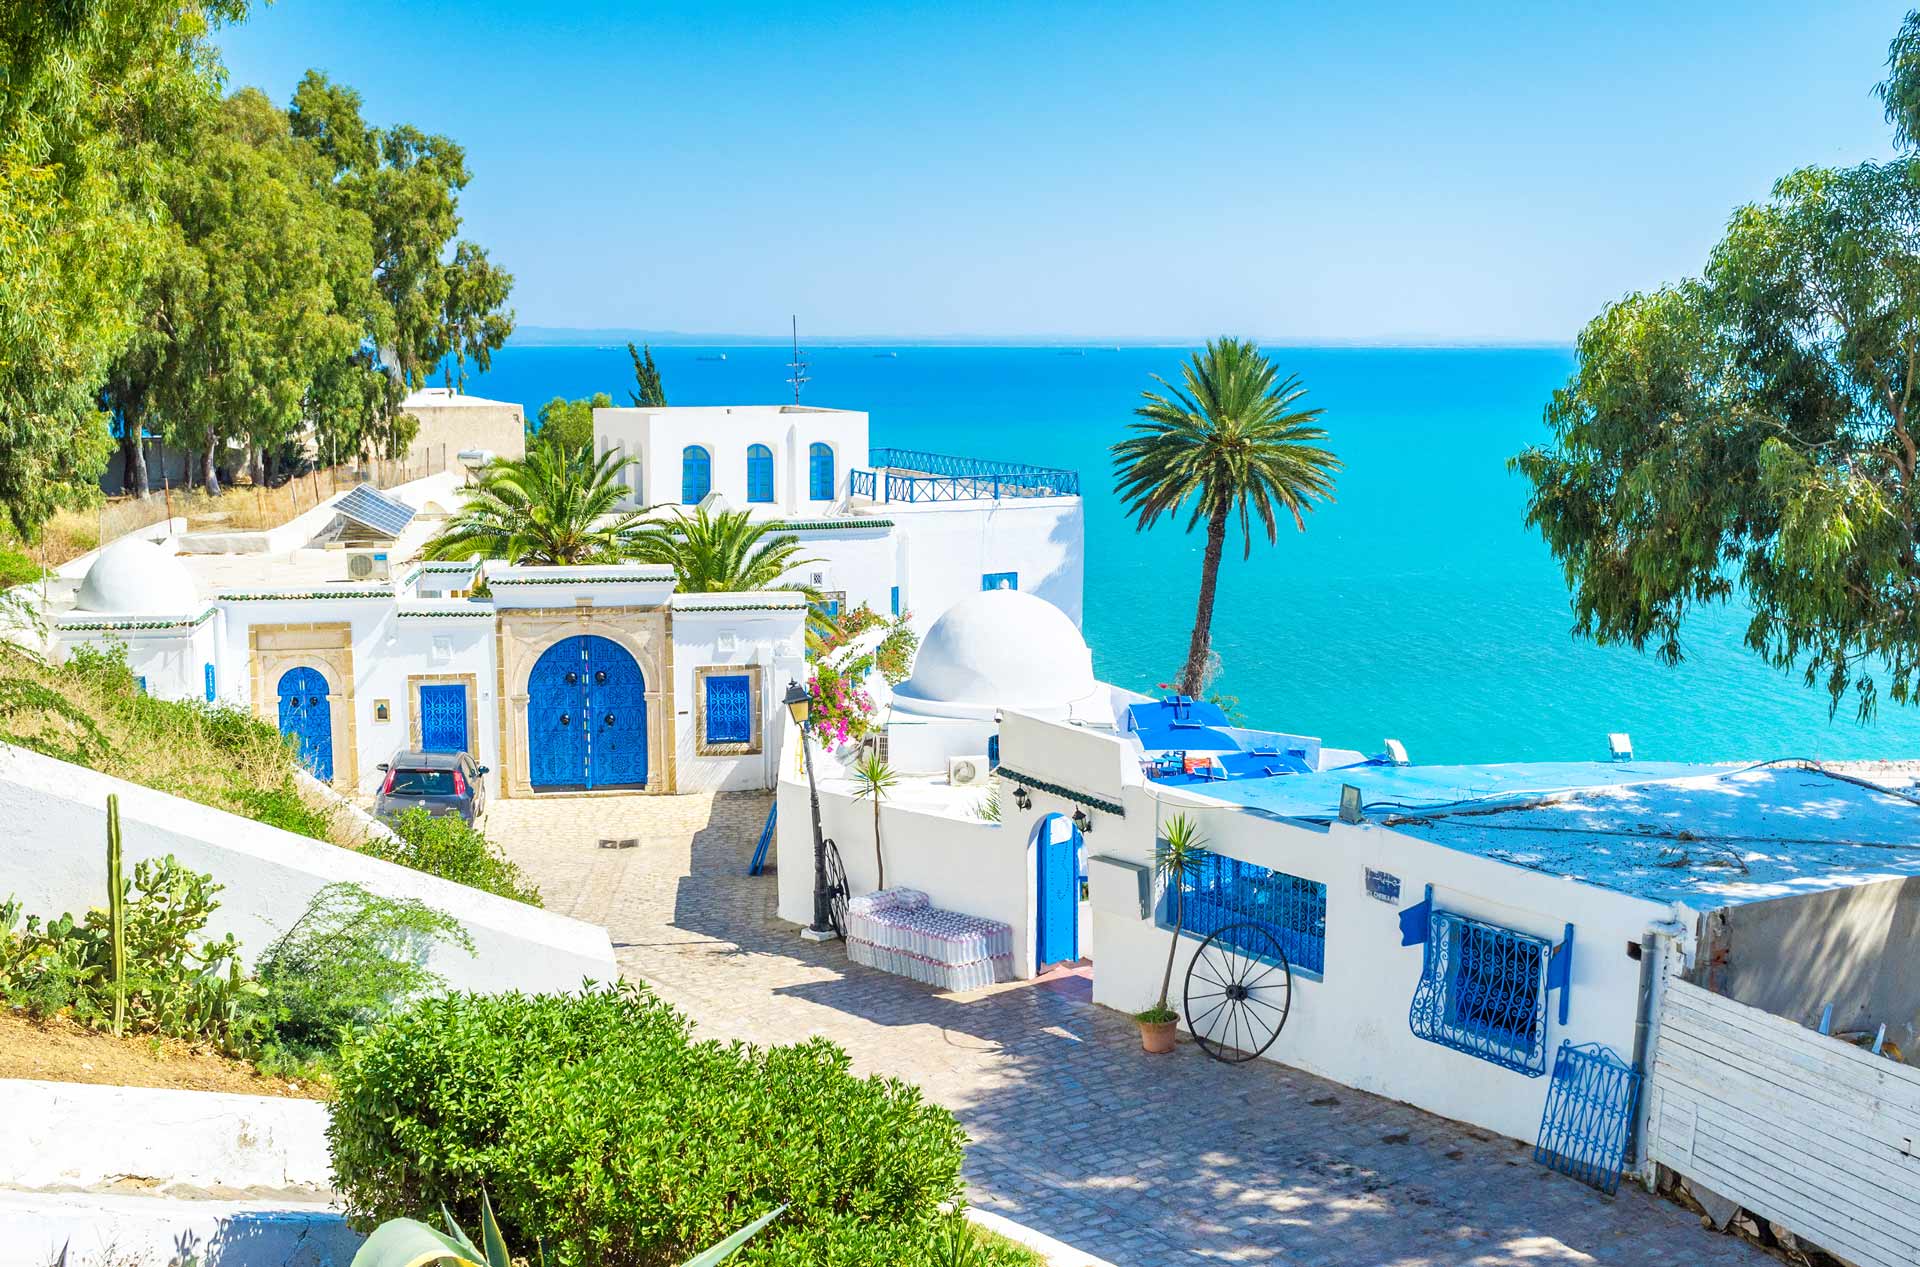 Café des Délices mit seinem traumhaften Ausblick auf den Hafen in Sidi Bousaid in Tunesien